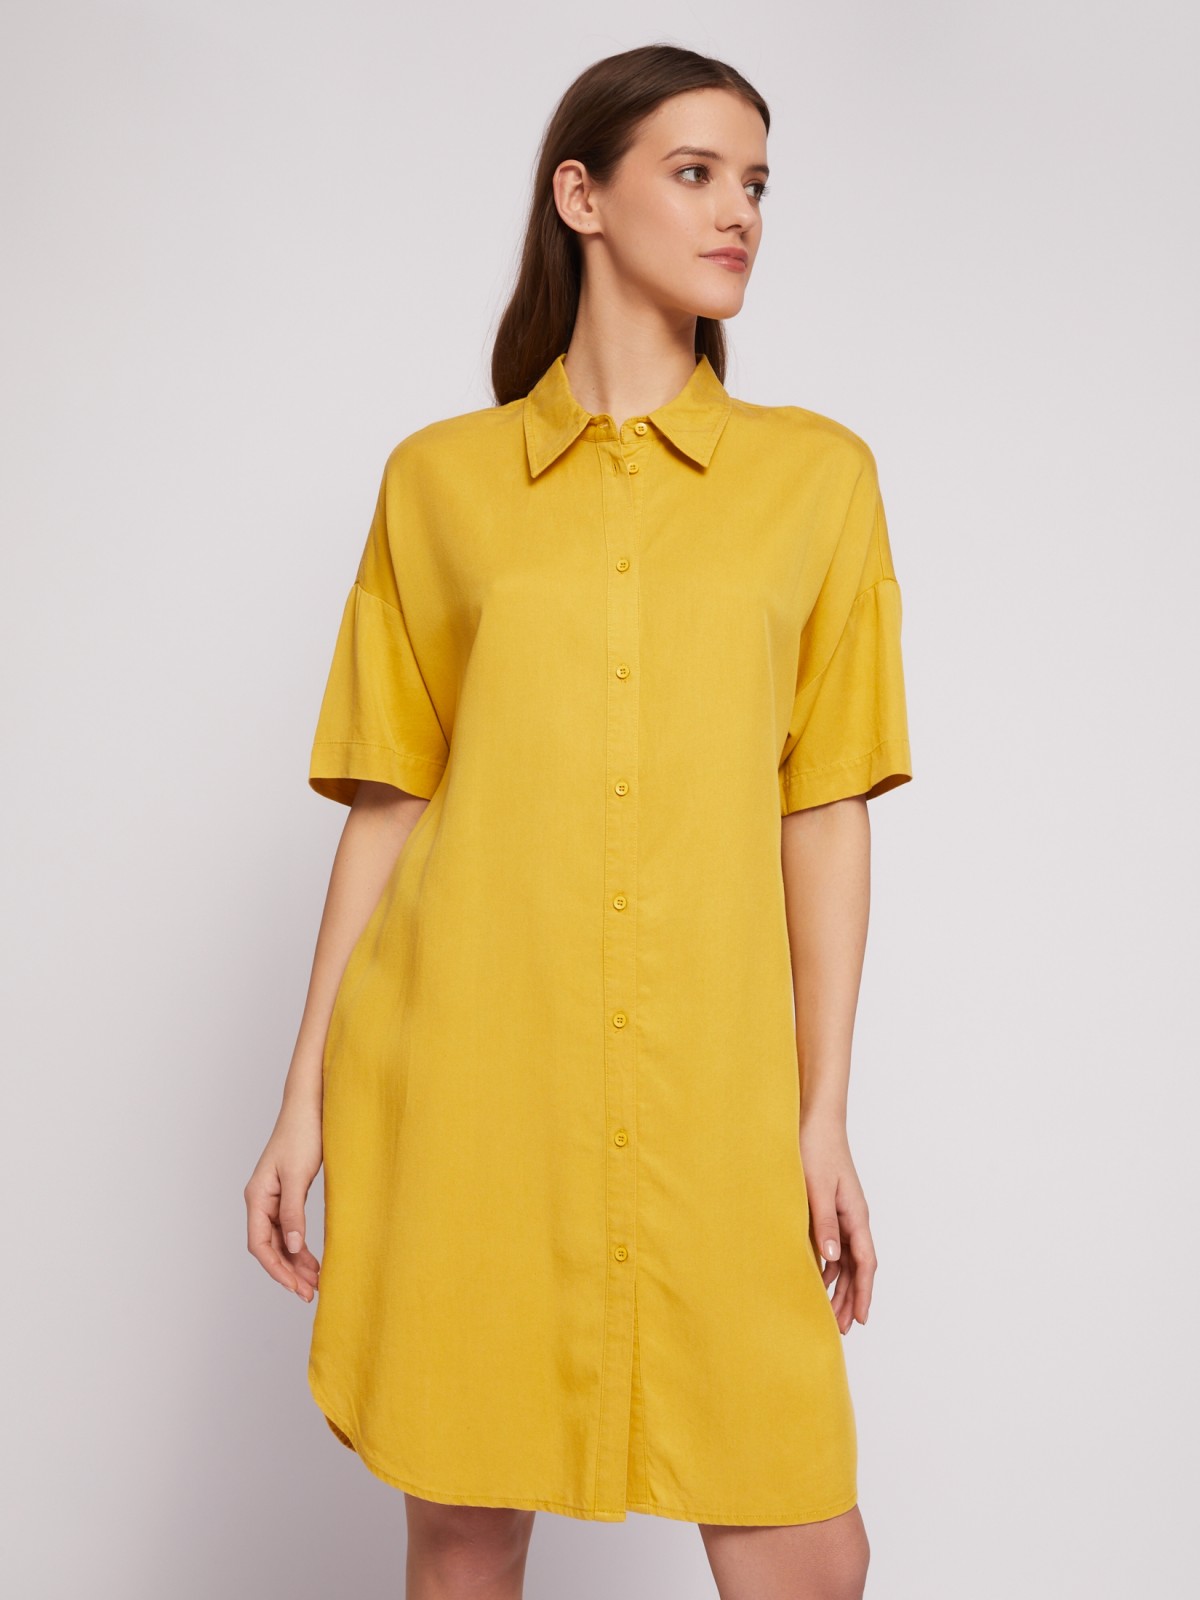 Платье-рубашка мини из лиоцелла на пуговицах zolla 02421827Y053, цвет горчичный, размер S - фото 1